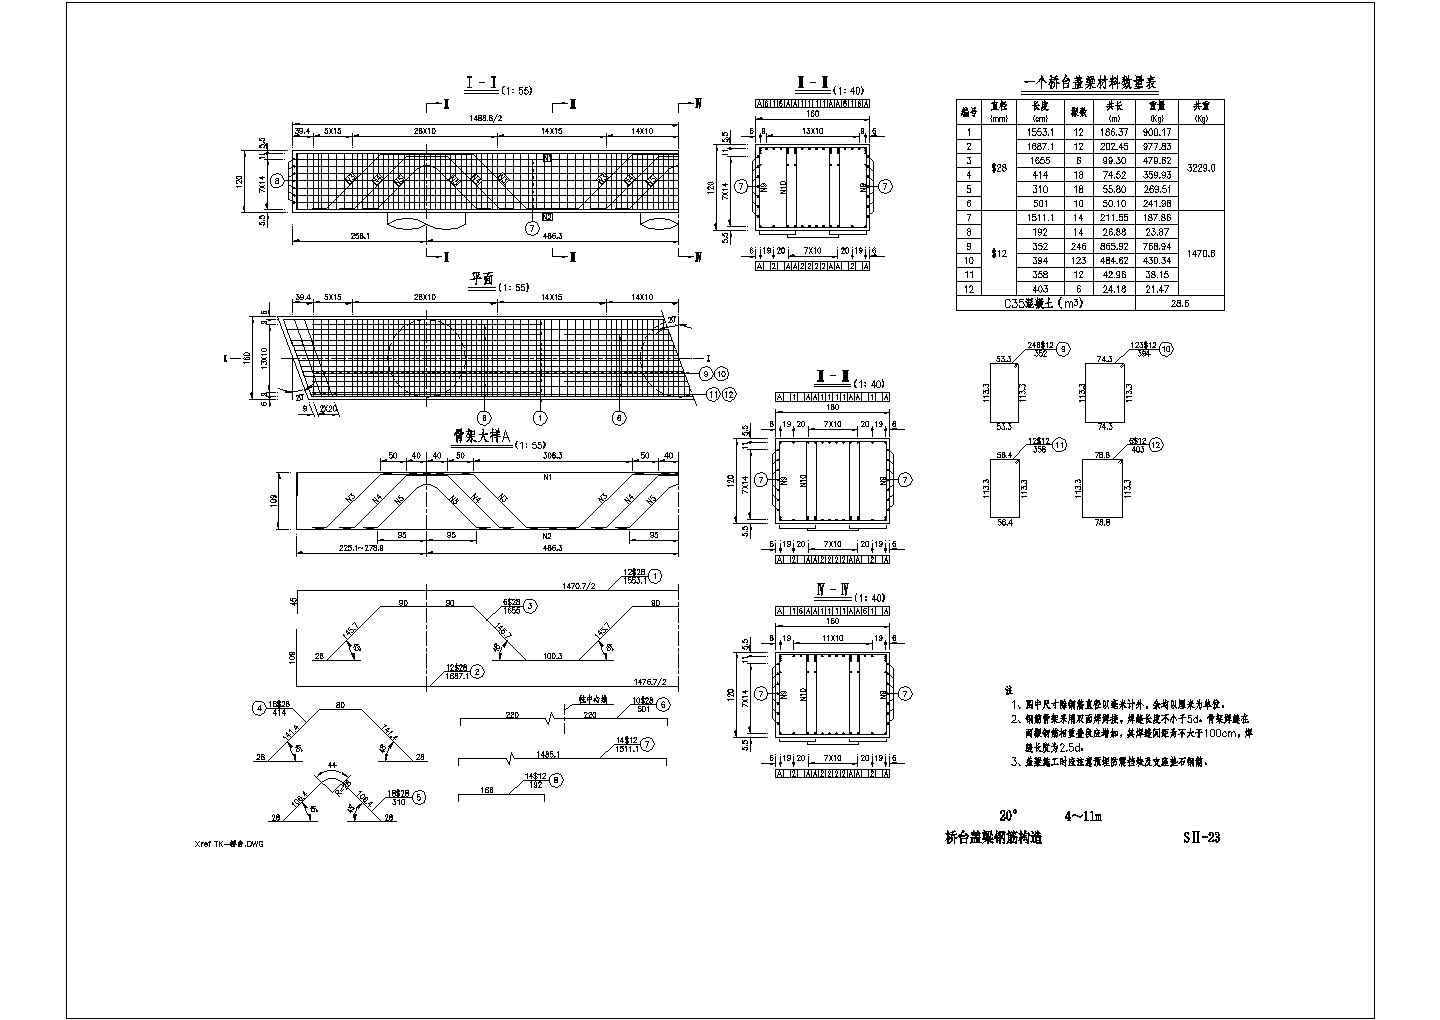 桥台盖梁钢筋-20度详细设计图